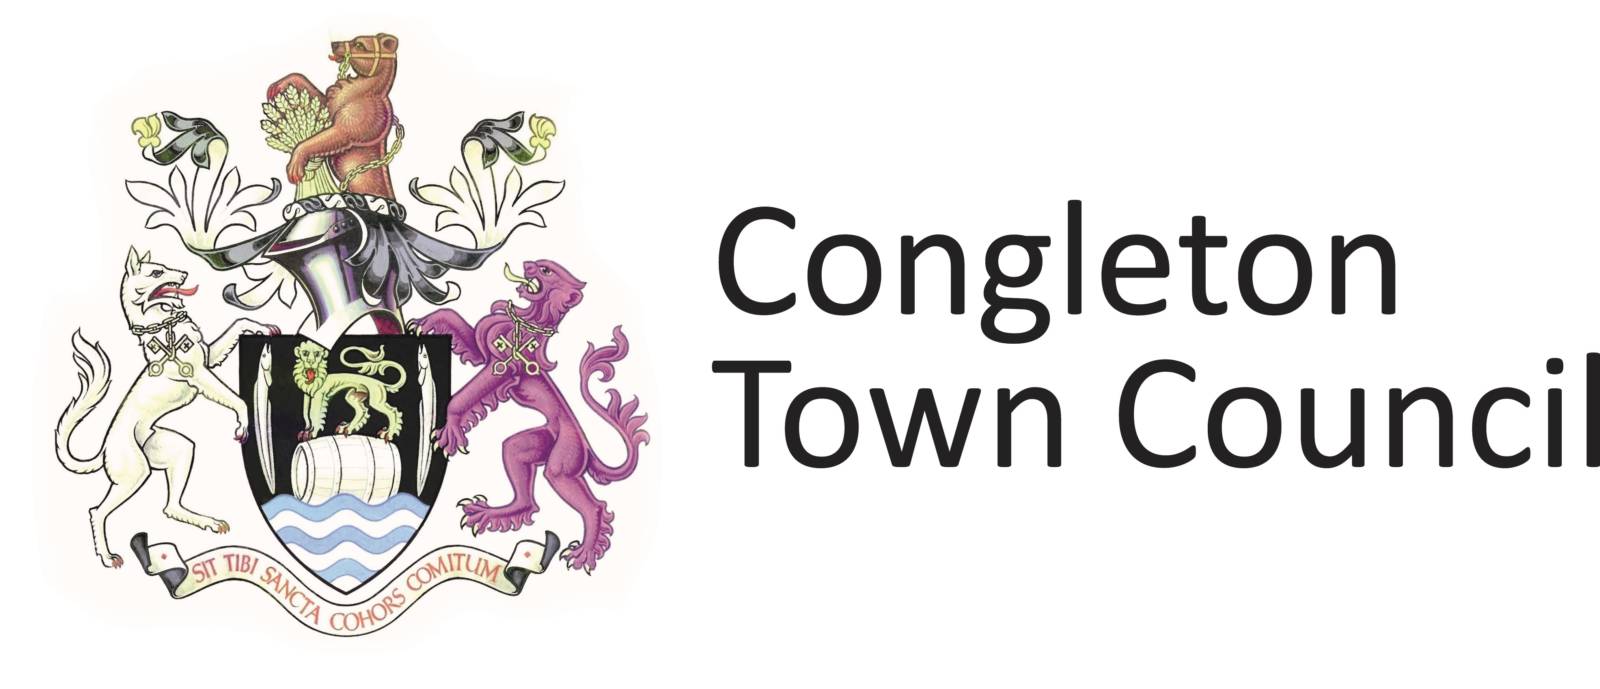 Congleton Town Council 